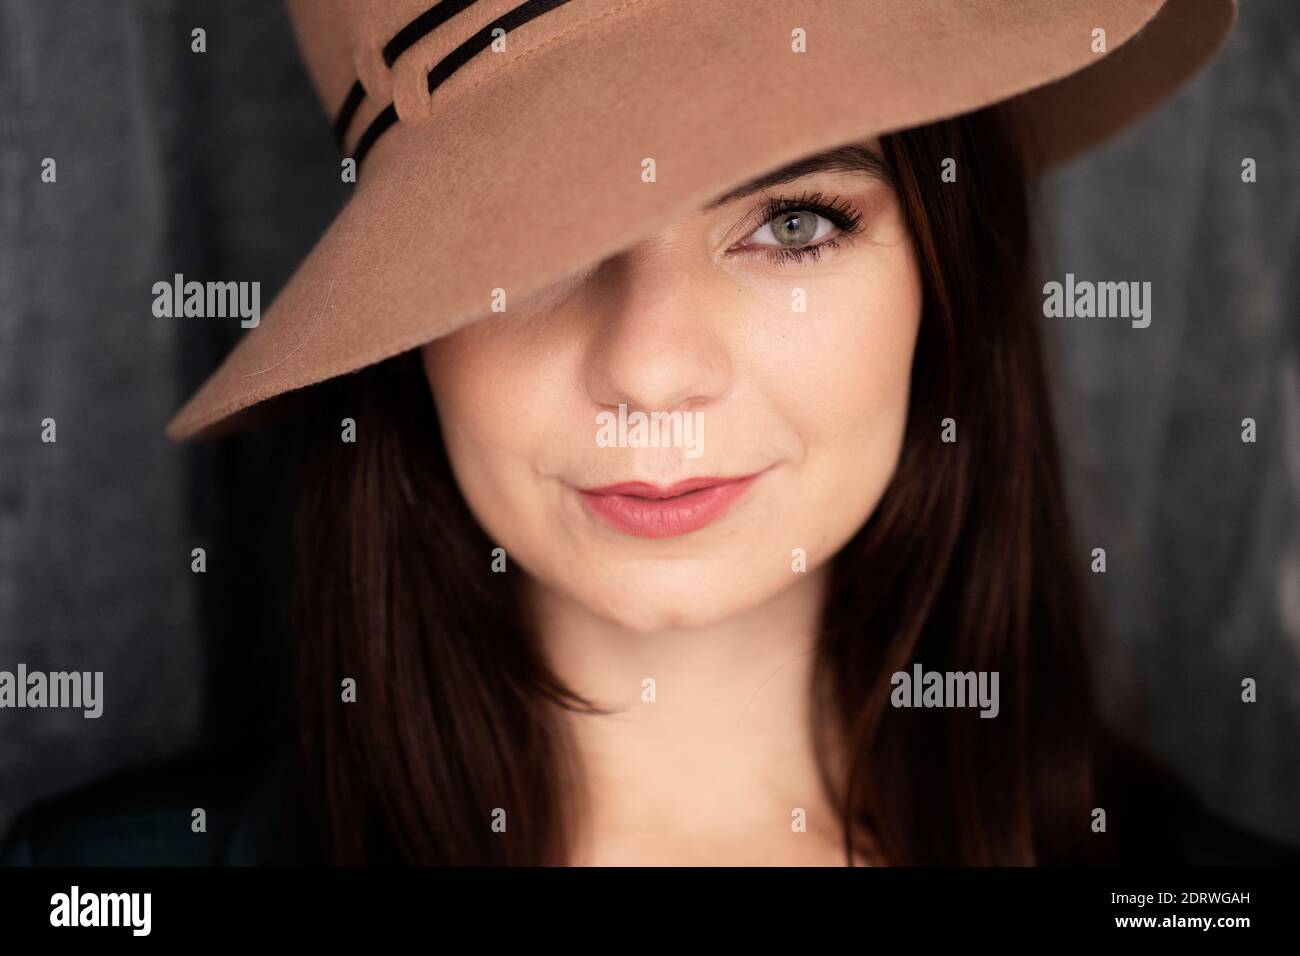 Beautiful woman wearing a hat Stock Photo